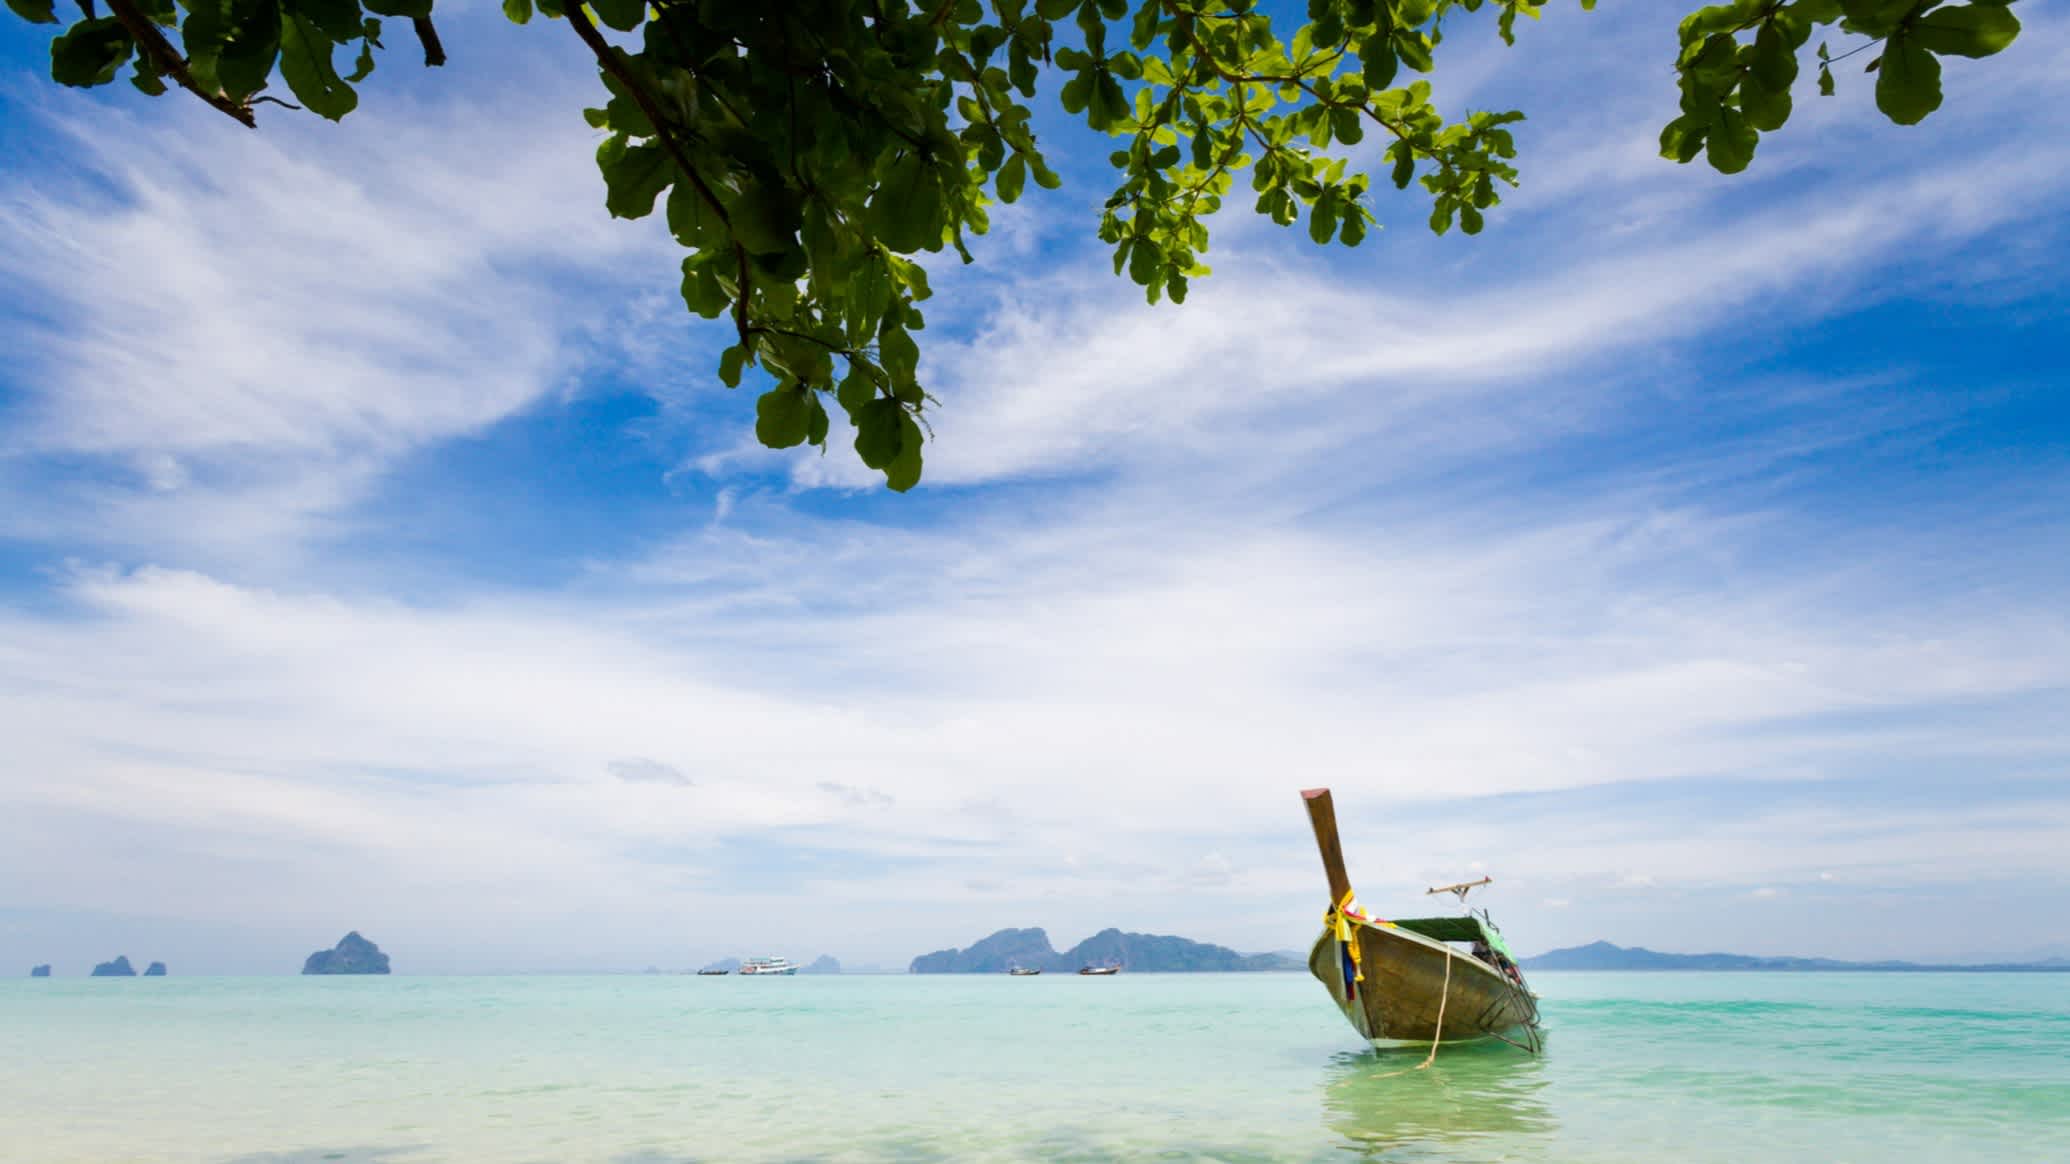 Bateau thaïlandais sur l'eau cristalline de la plage de Koh Kradan en Thaïlande